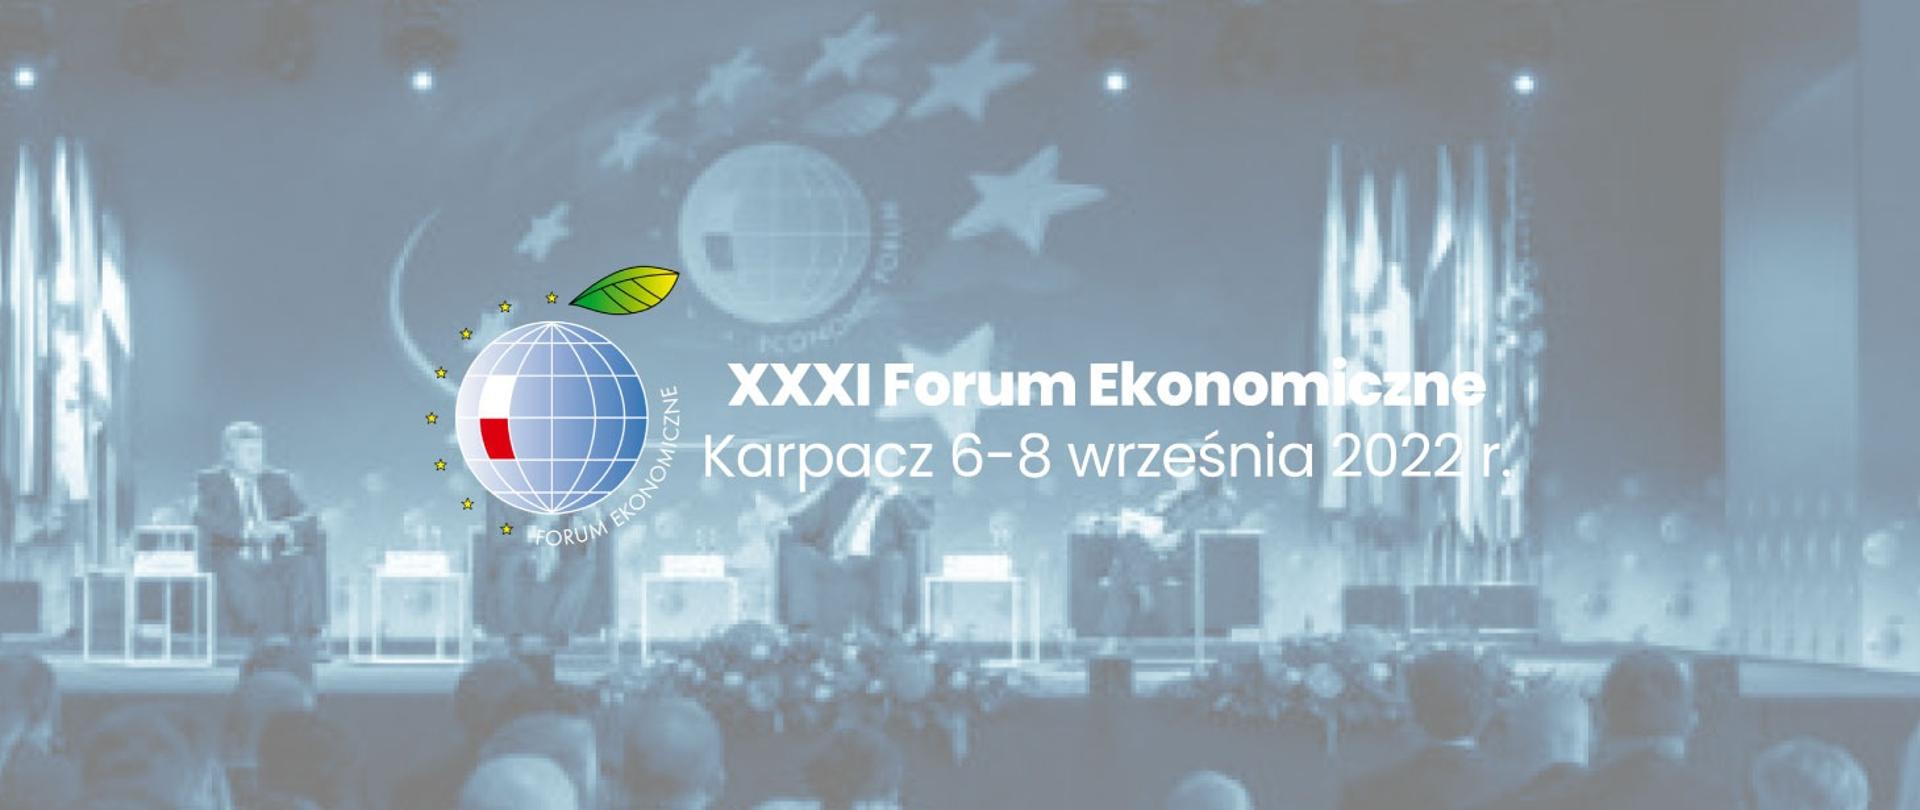 XXXI Forum Ekonomiczne 